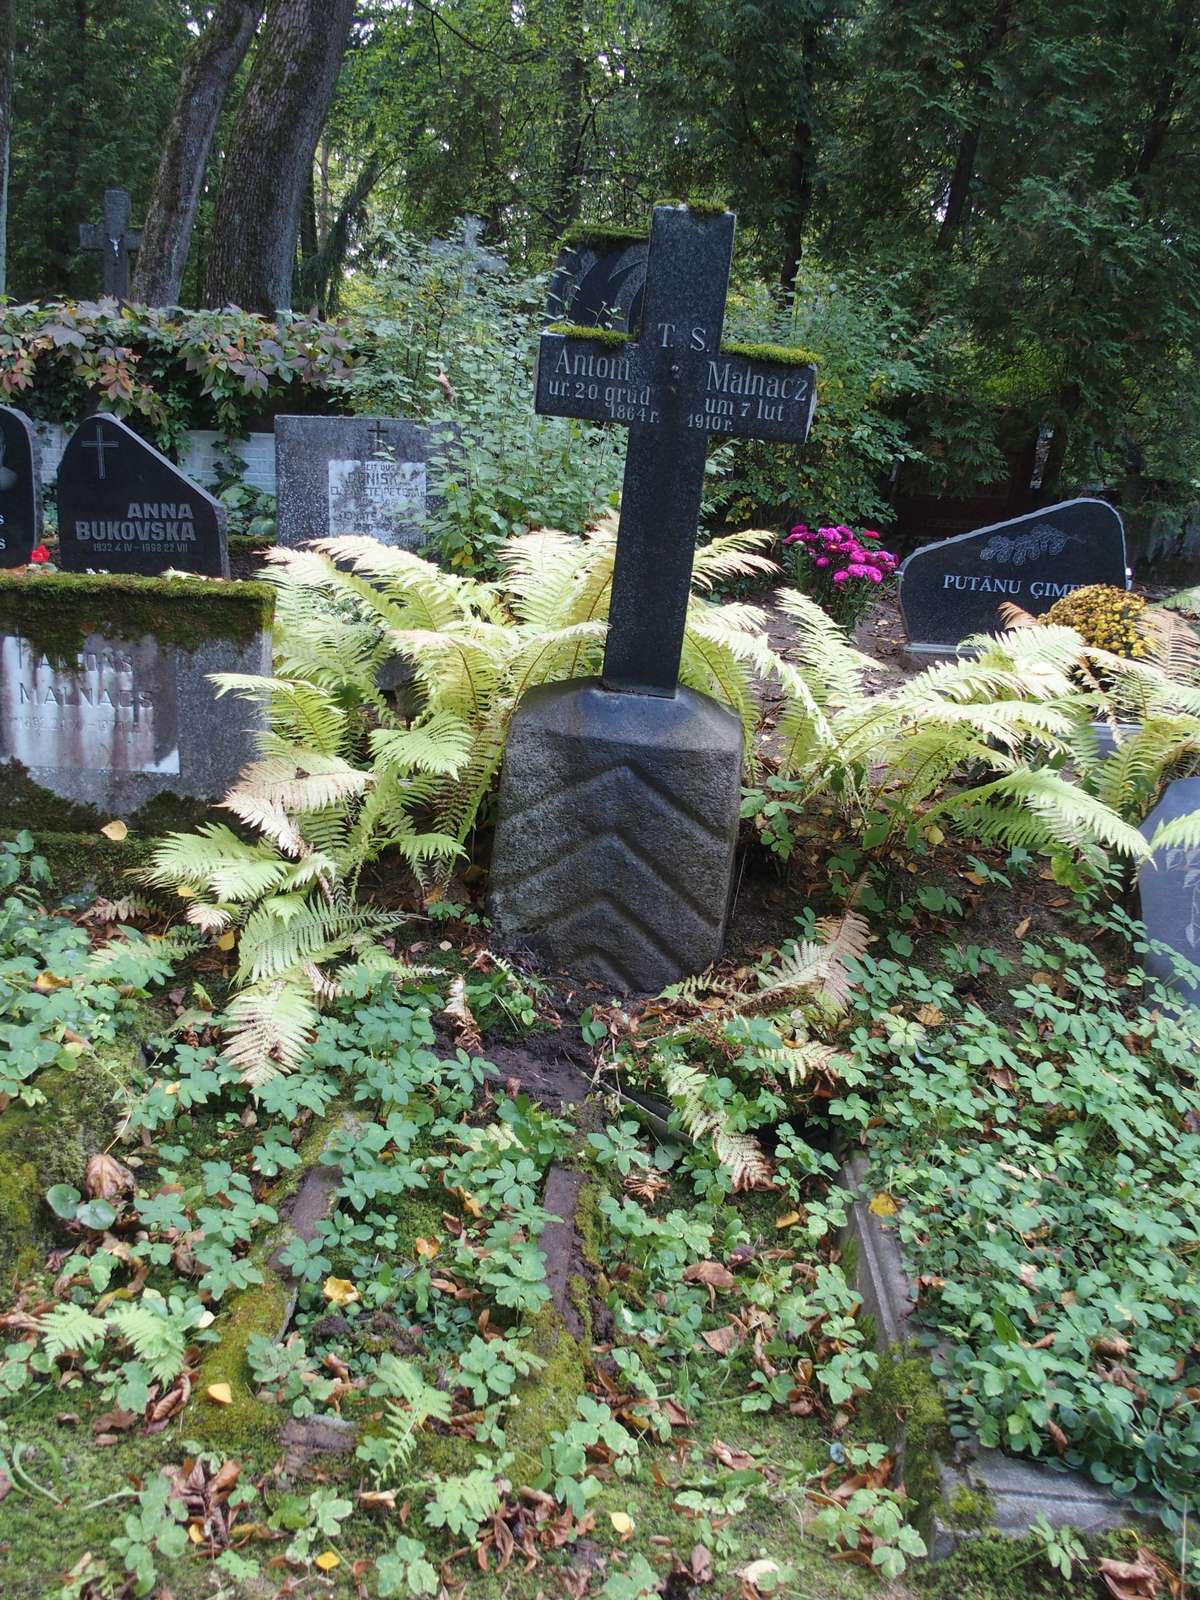 Tombstone of Antoni Malnacz